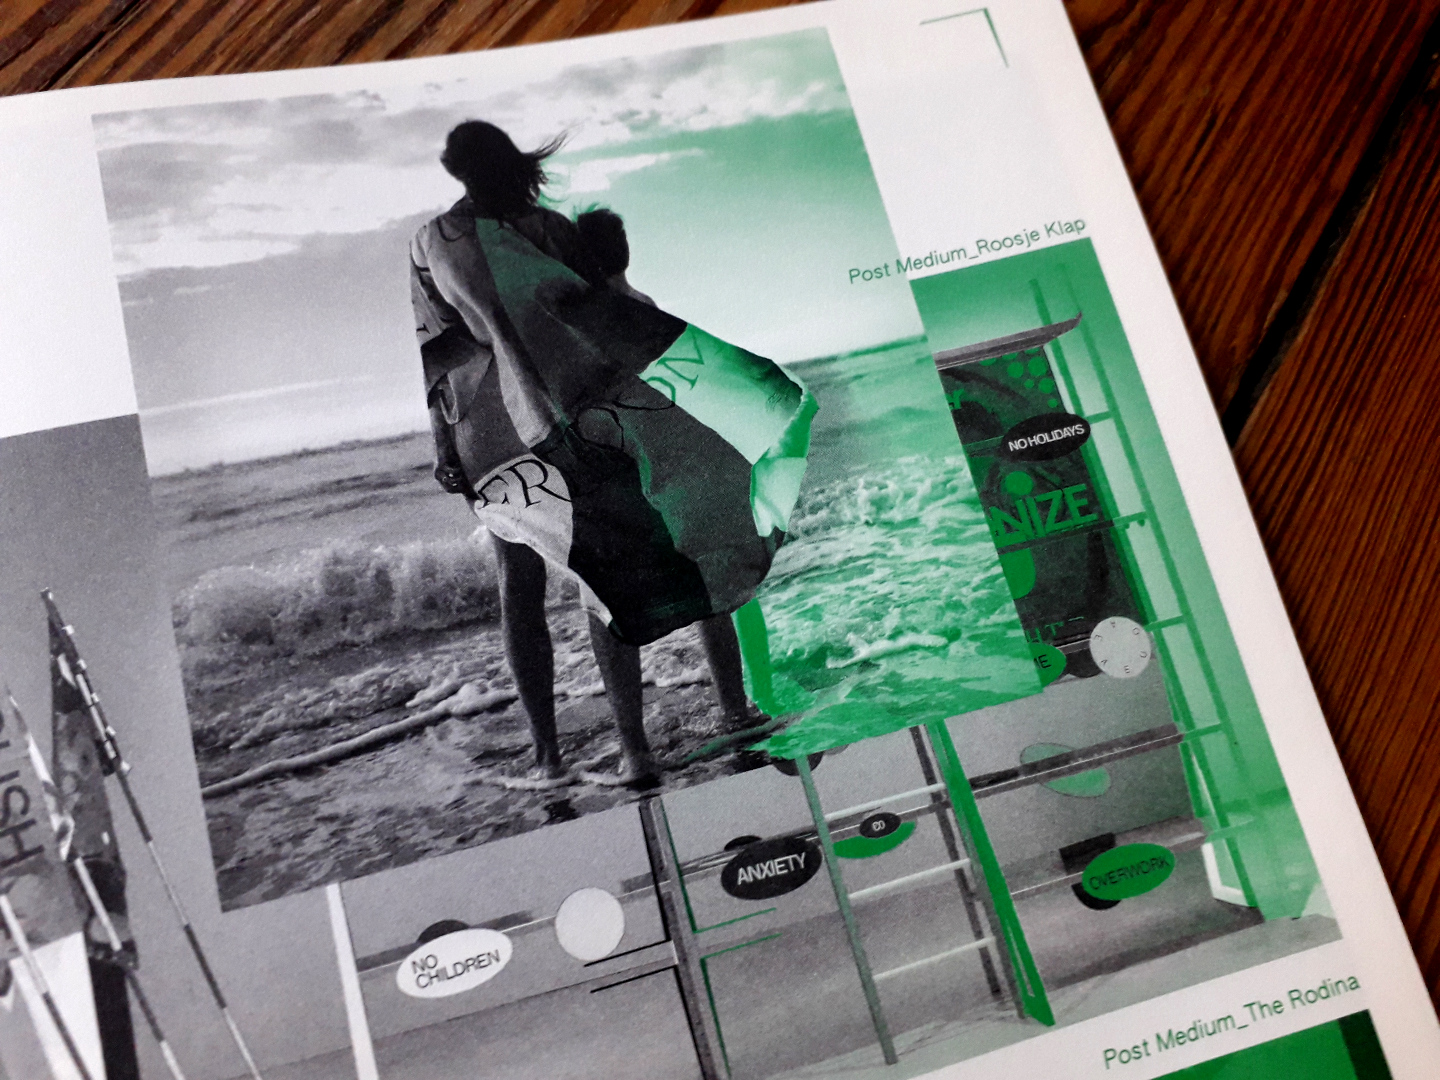 Image 4 : Photographie d'un habit graphique conçu par Roosje Klap en noir et blanc et vert